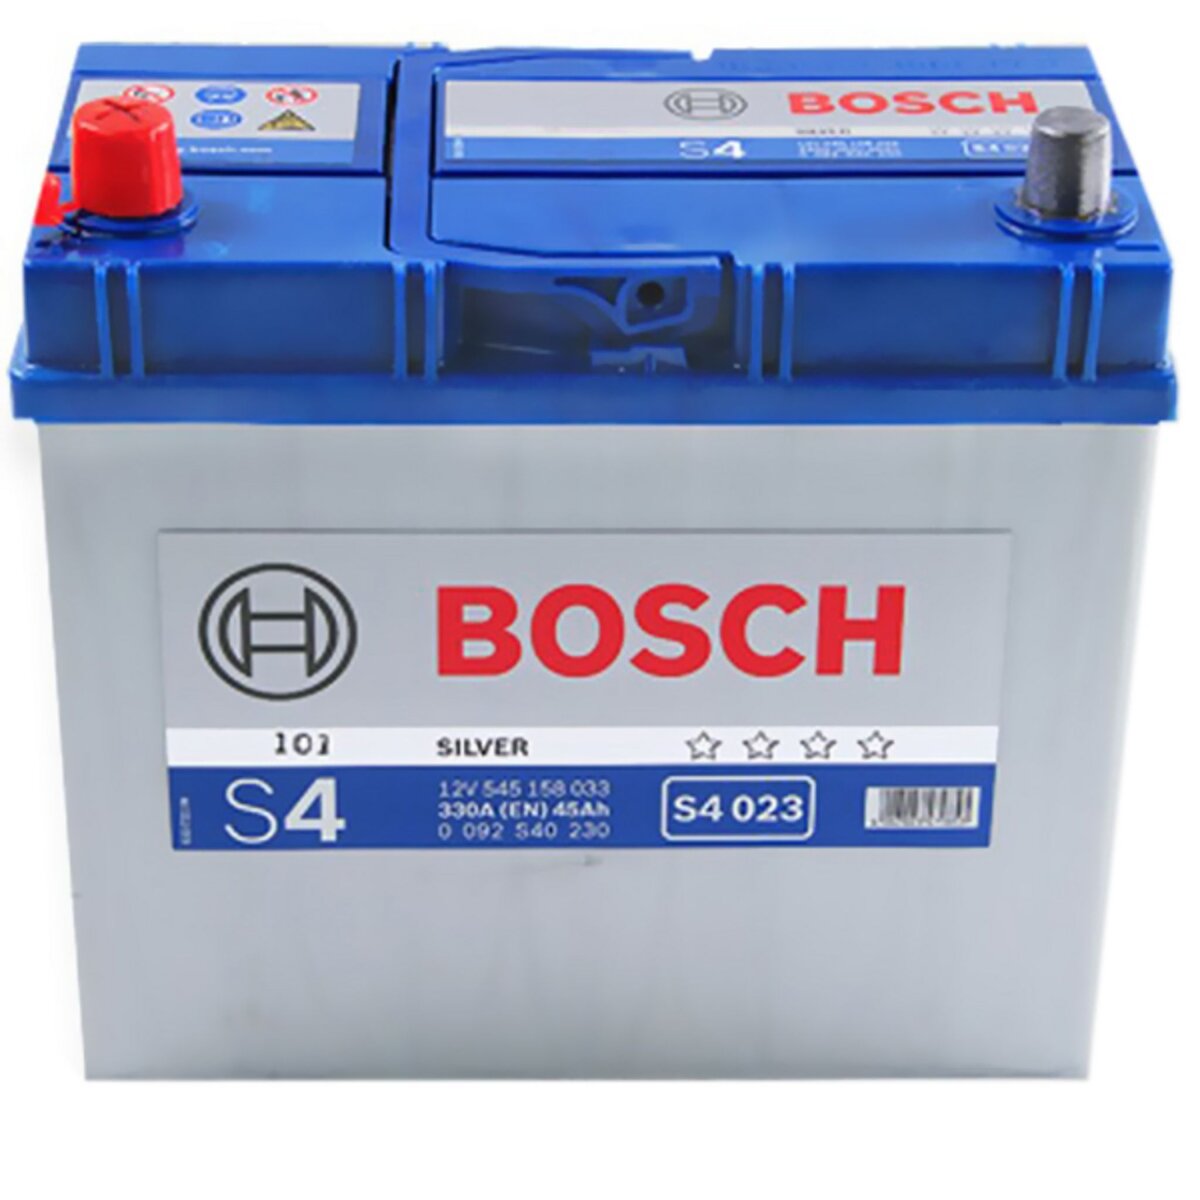 BOSCH Batterie Bosch S4023 45Ah 330A BOSCH